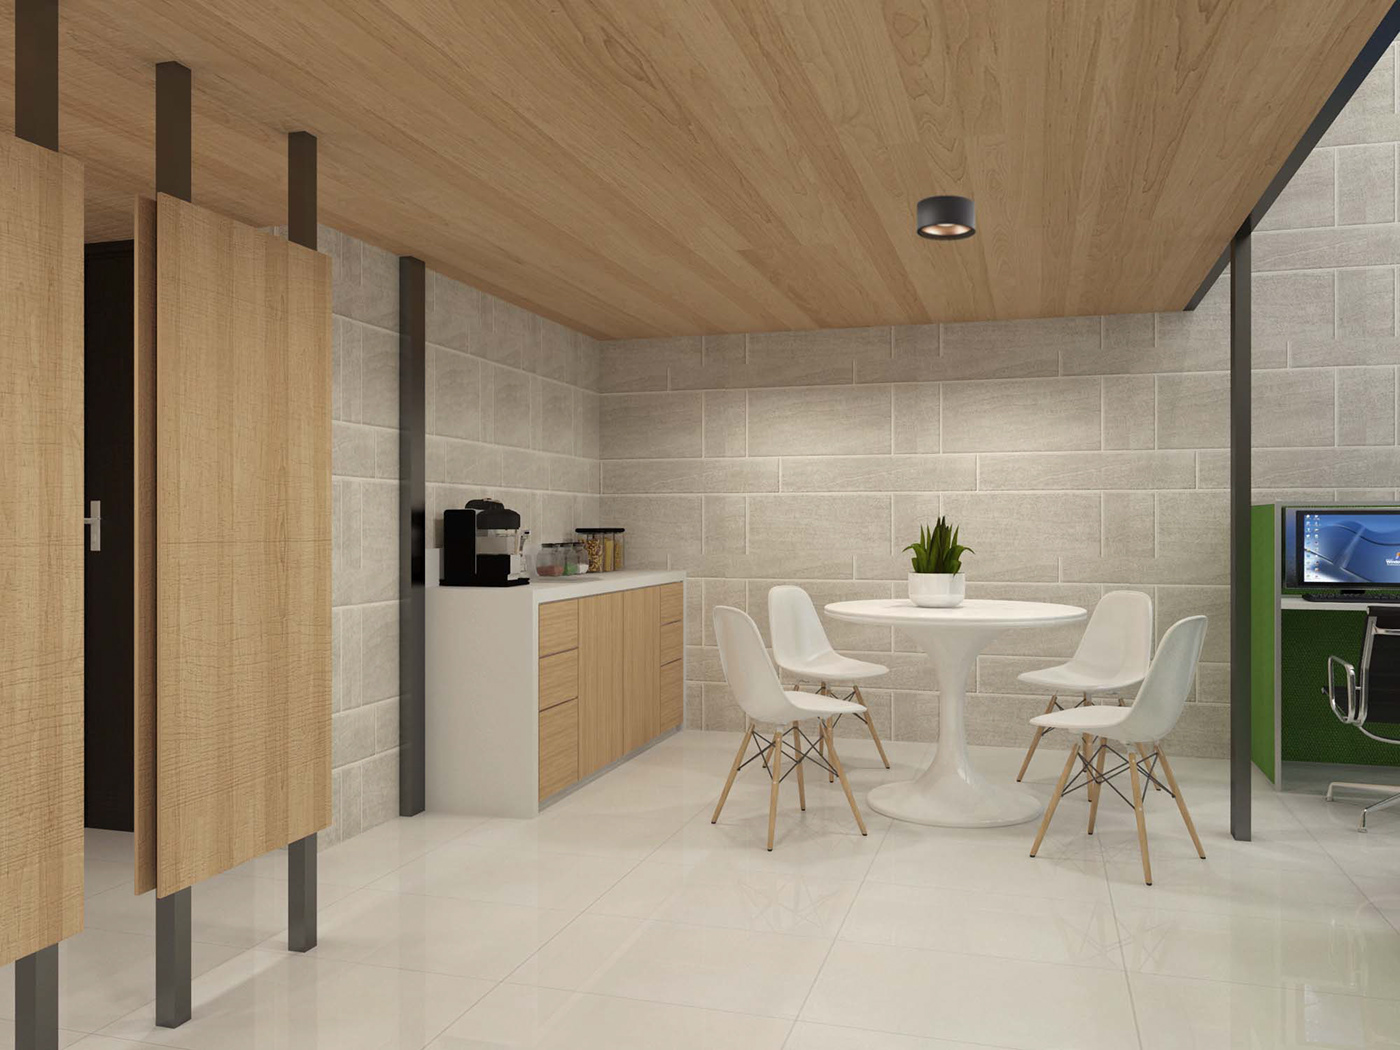 Office design rendering Interior ideas Style Layout art furniture duplex